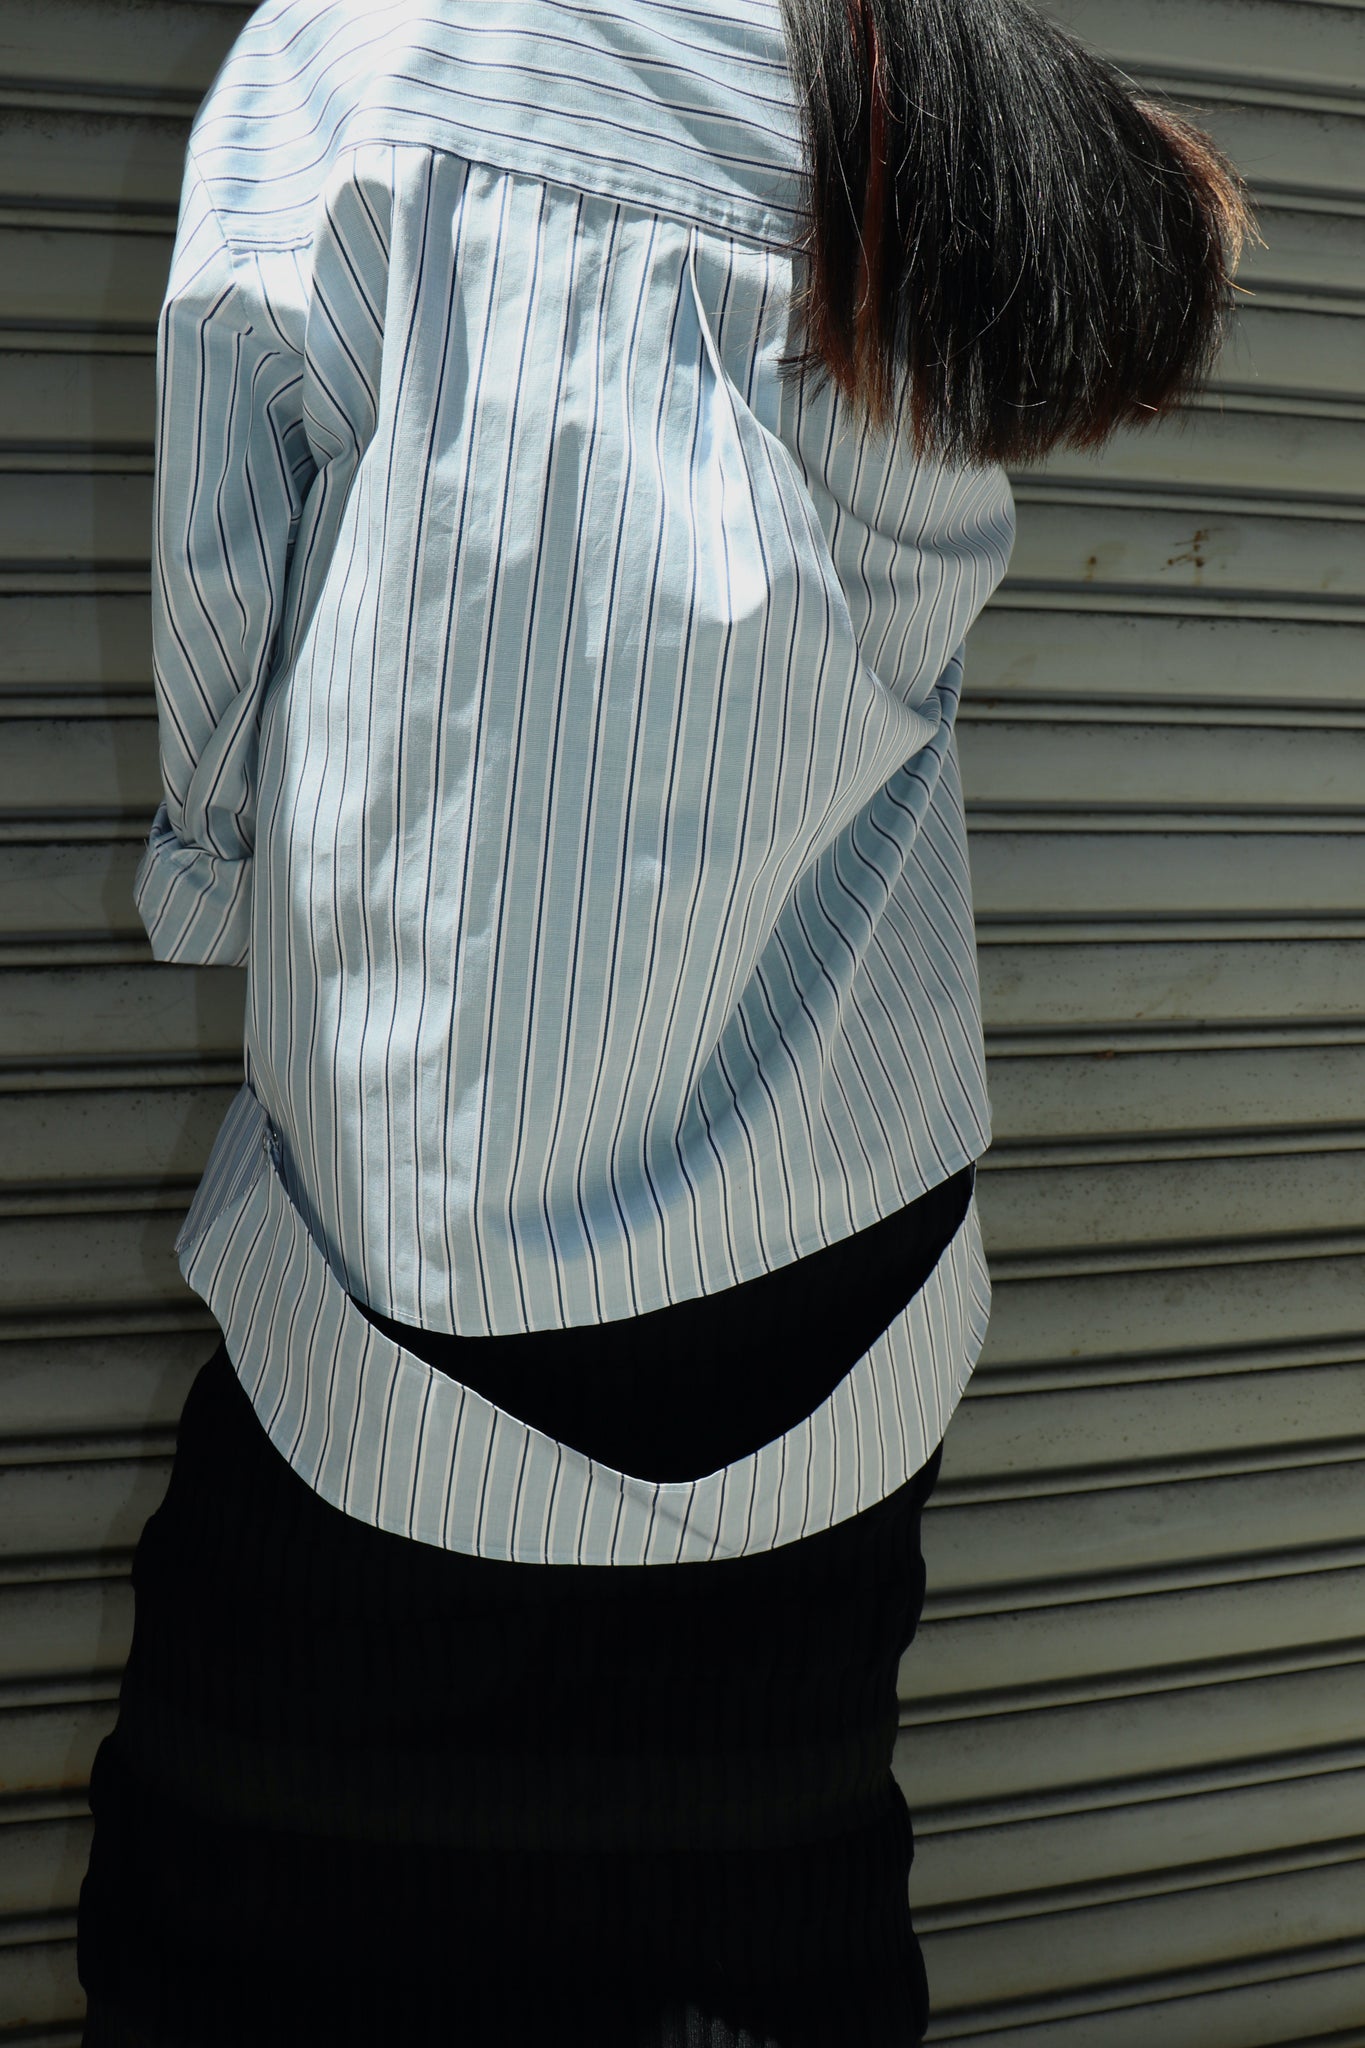 KOTOHAYOKOZAWA 23SS LAYERED SHIRTSを使用したスタイリング画像